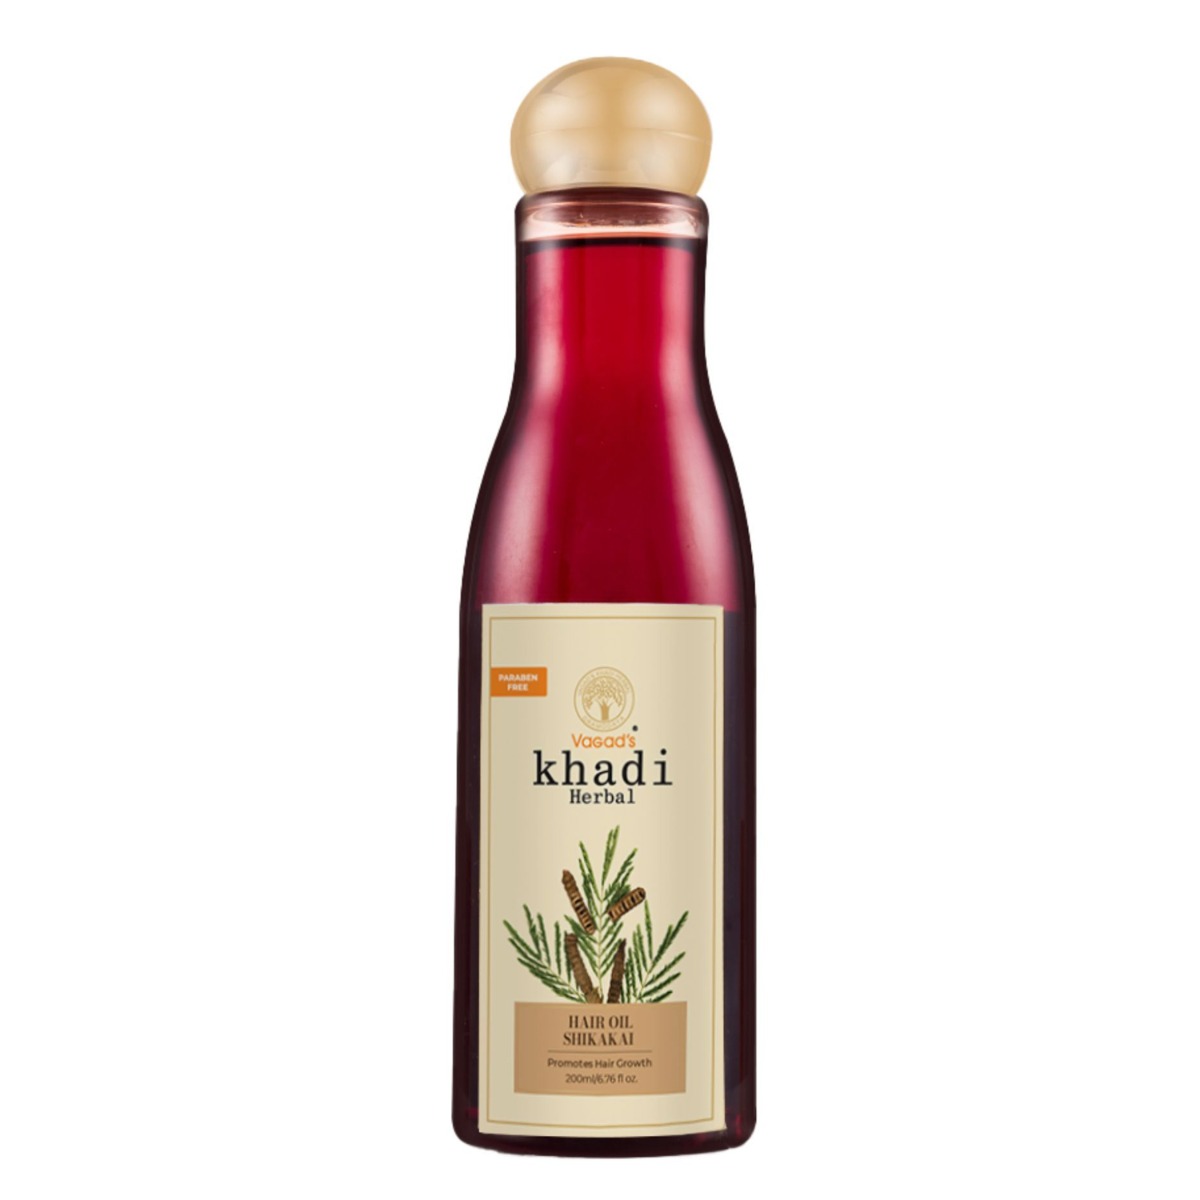 Vagad's Khadi Shikakai Hair Oil, 200ml